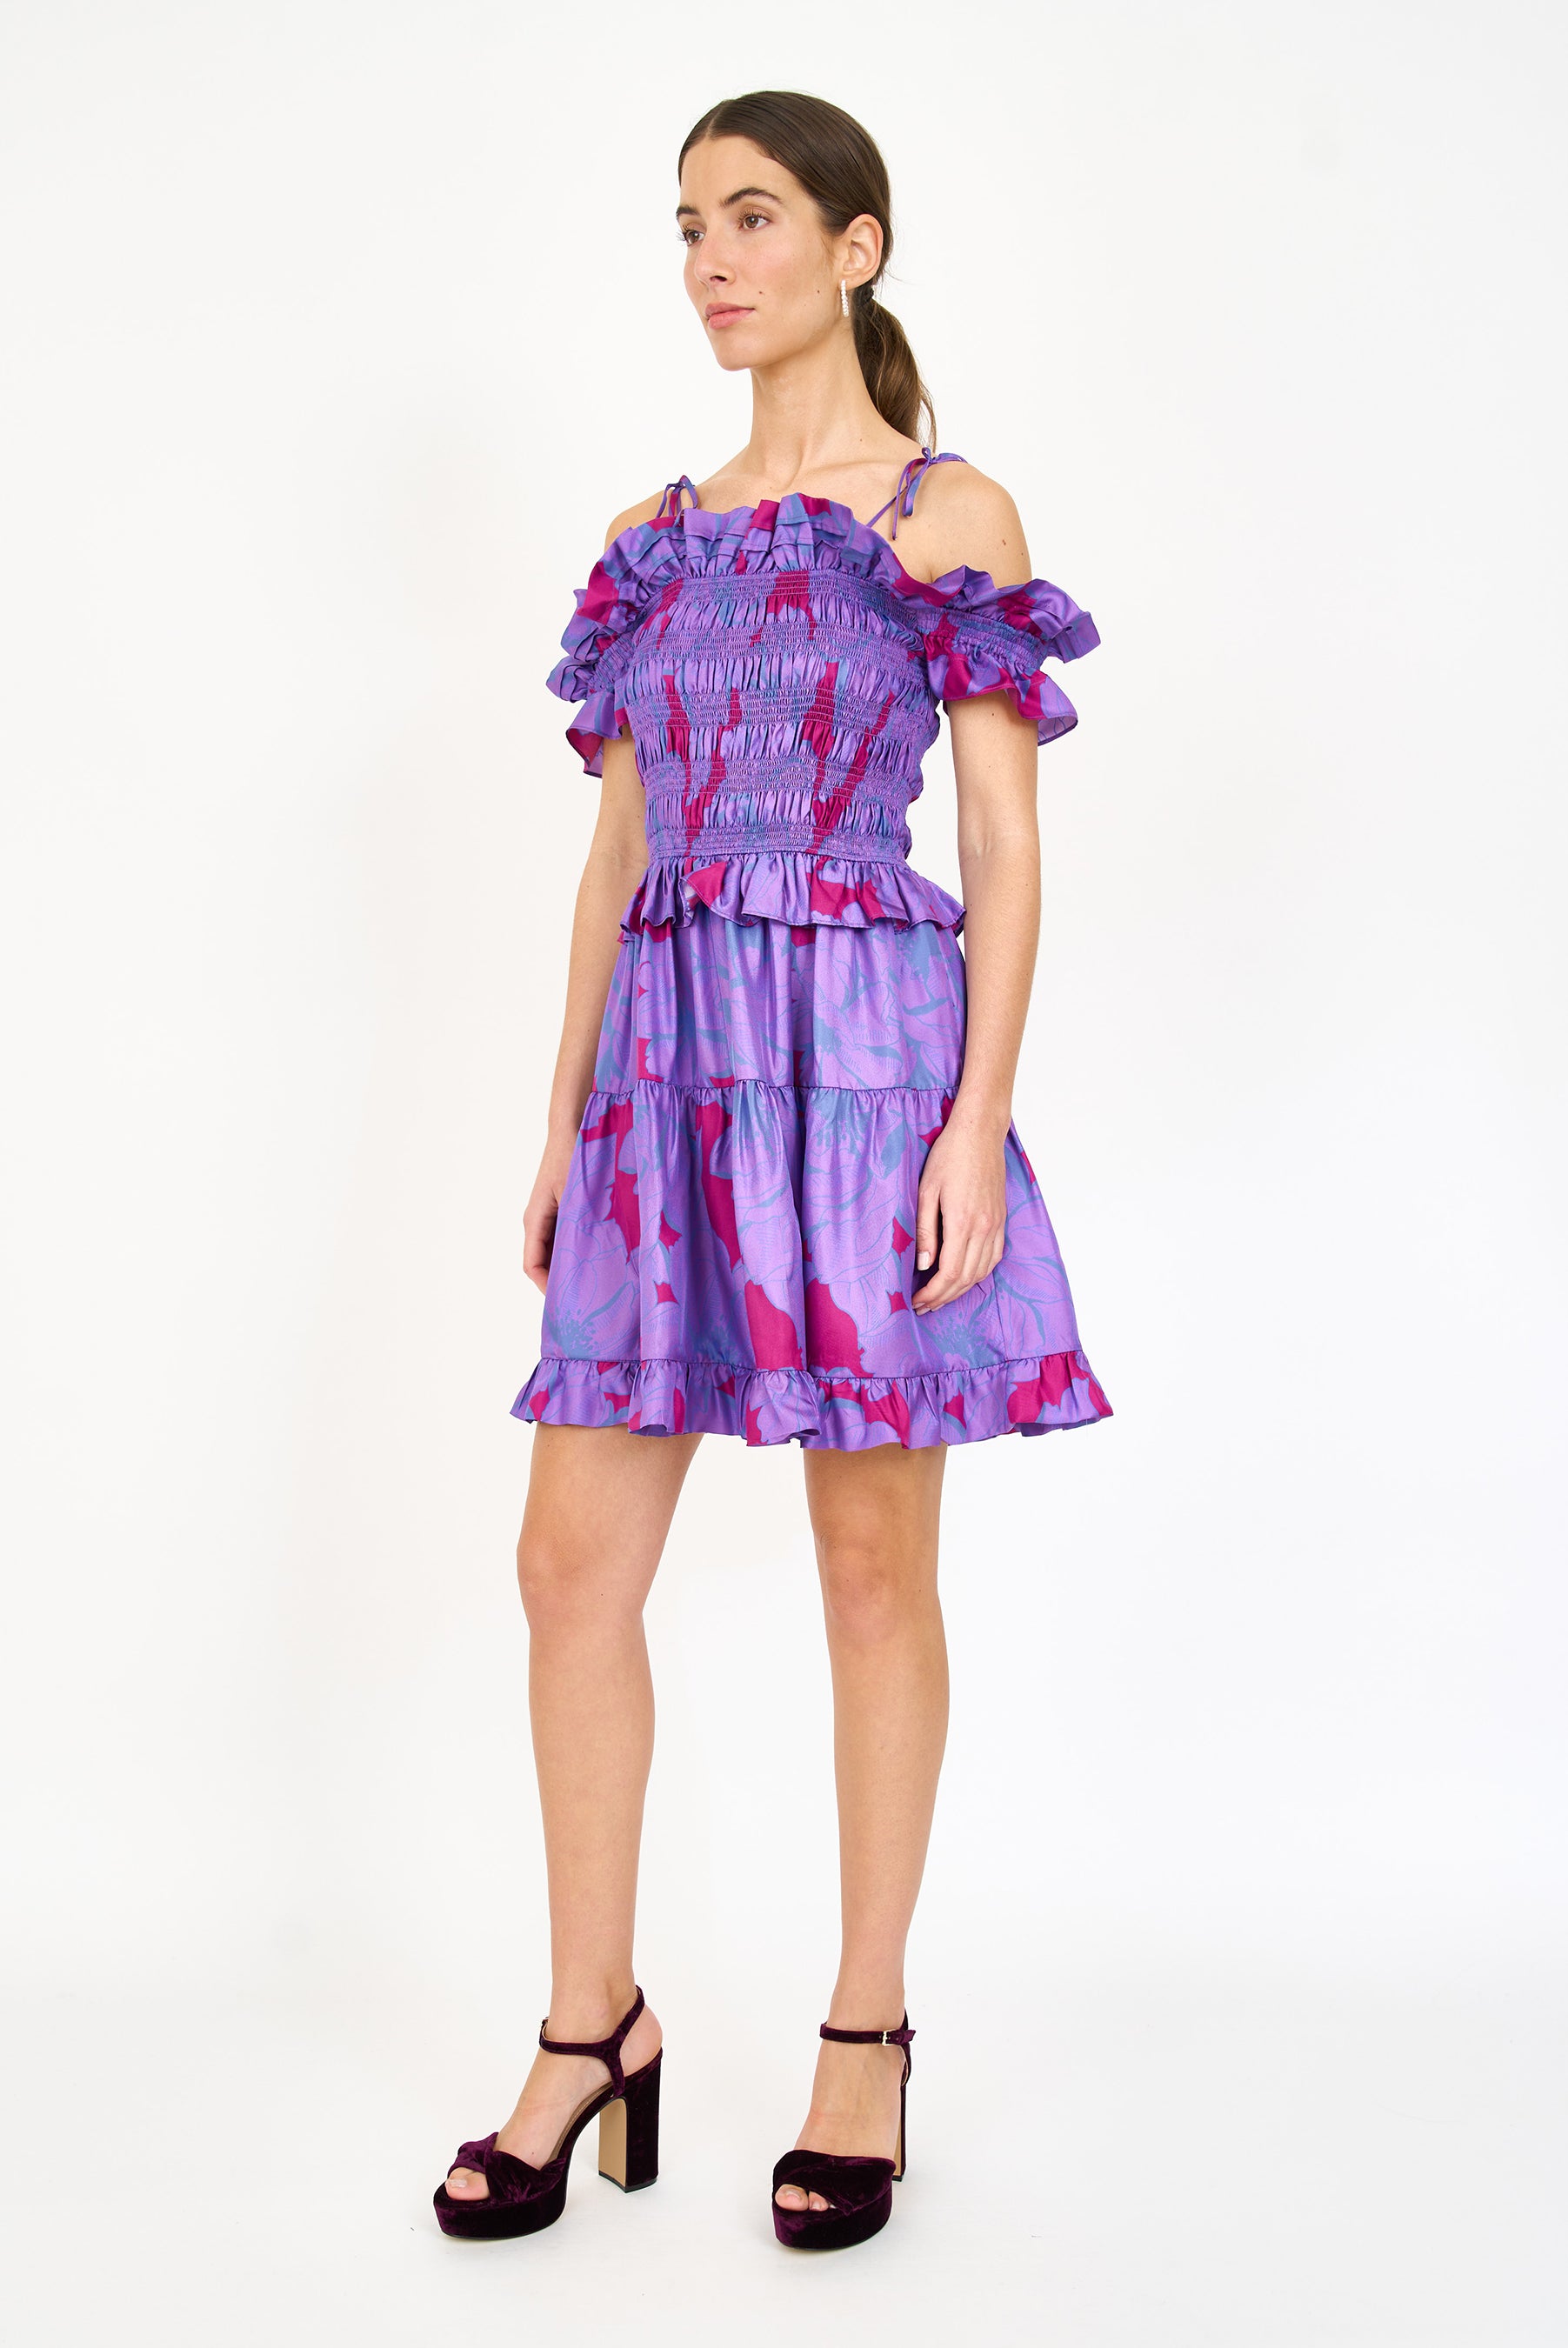 Carlotta Dress - Vibrant Bloom